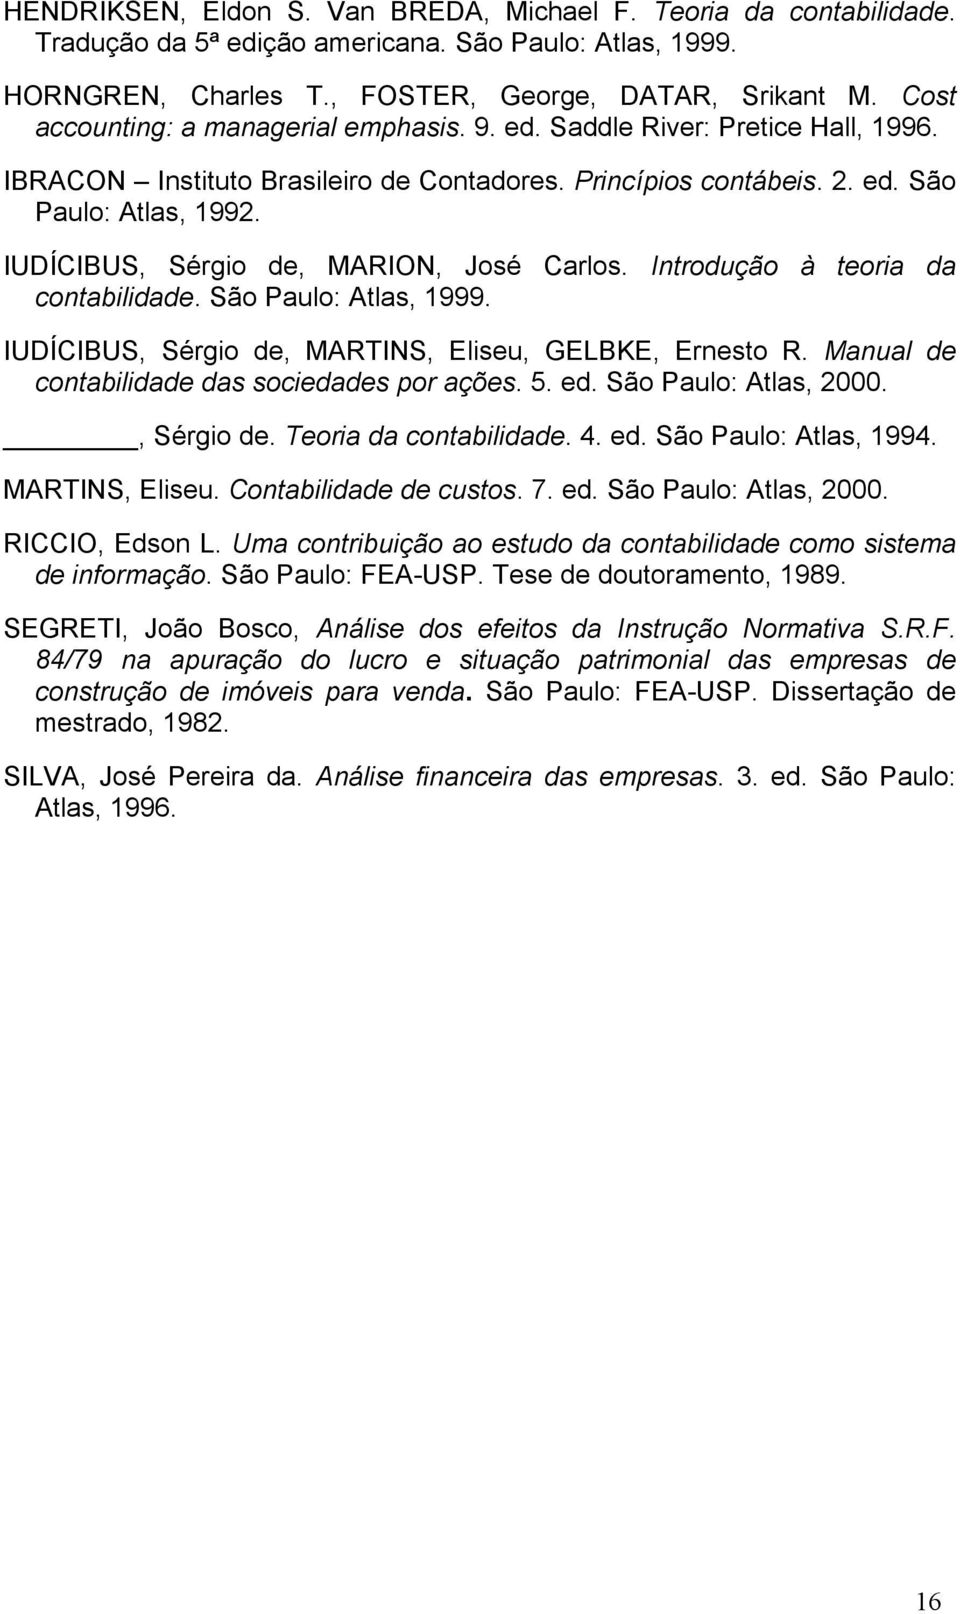 IUDÍCIBUS, Sérgio de, MARION, José Carlos. Introdução à teoria da contabilidade. São Paulo: Atlas, 1999. IUDÍCIBUS, Sérgio de, MARTINS, Eliseu, GELBKE, Ernesto R.